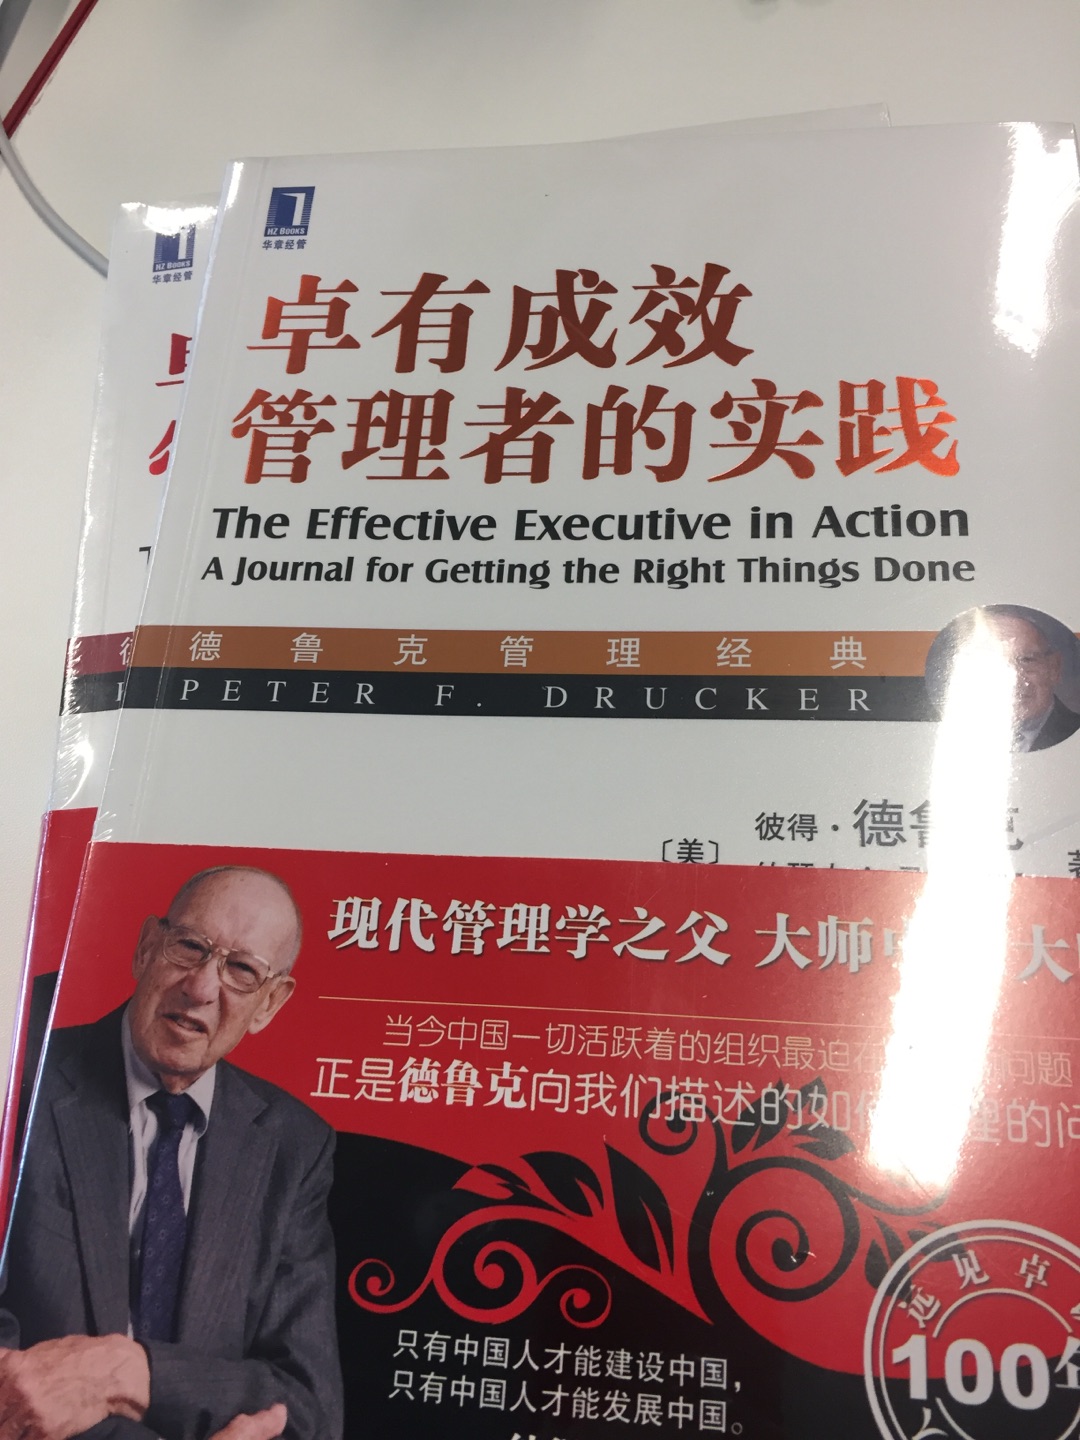 特别好的一本书，经典的德鲁克书籍，本书为德鲁克老先生生前撰写的经典书籍之一，现代管理学大厦的根基管理学诞生的标志，当今中国一代活跃着的组织最近的眉睫的问题，正是德鲁克向我们描述的如何管理的问题。 书籍购买有优惠，性价比高，快递有保障，很不错。